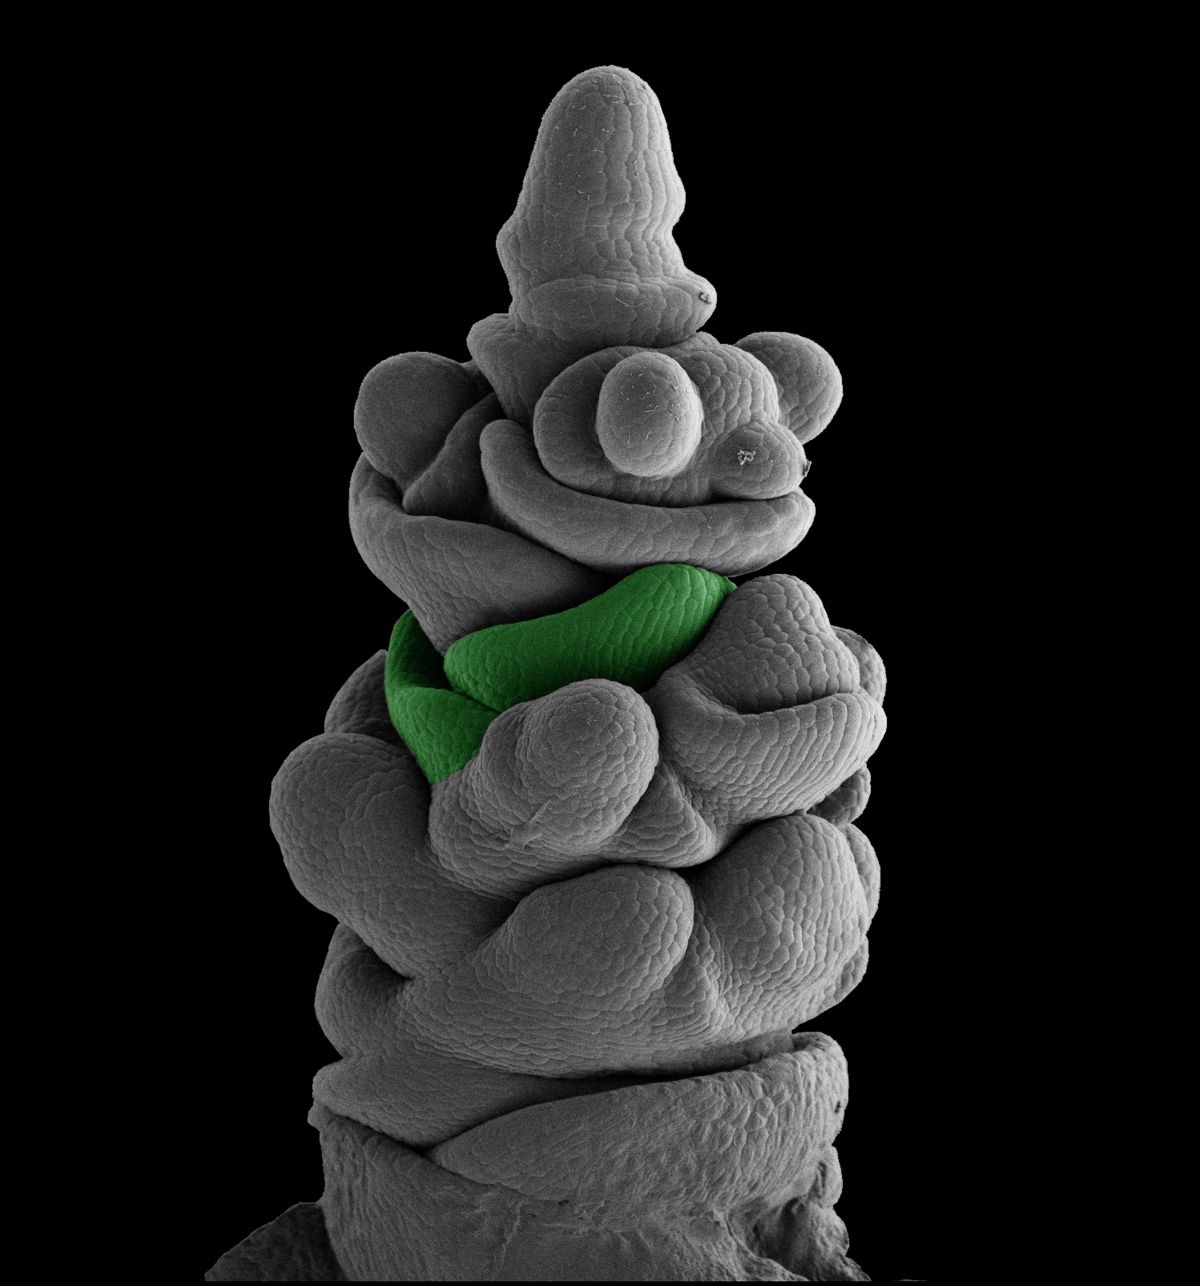 Frühes Entwicklungsstadium der Ähre in einer untersuchten Gersten-Mutante. Grün markiert ist das Meristem der Hüllspelze, das ein endständiges Blütchen umschließt.
